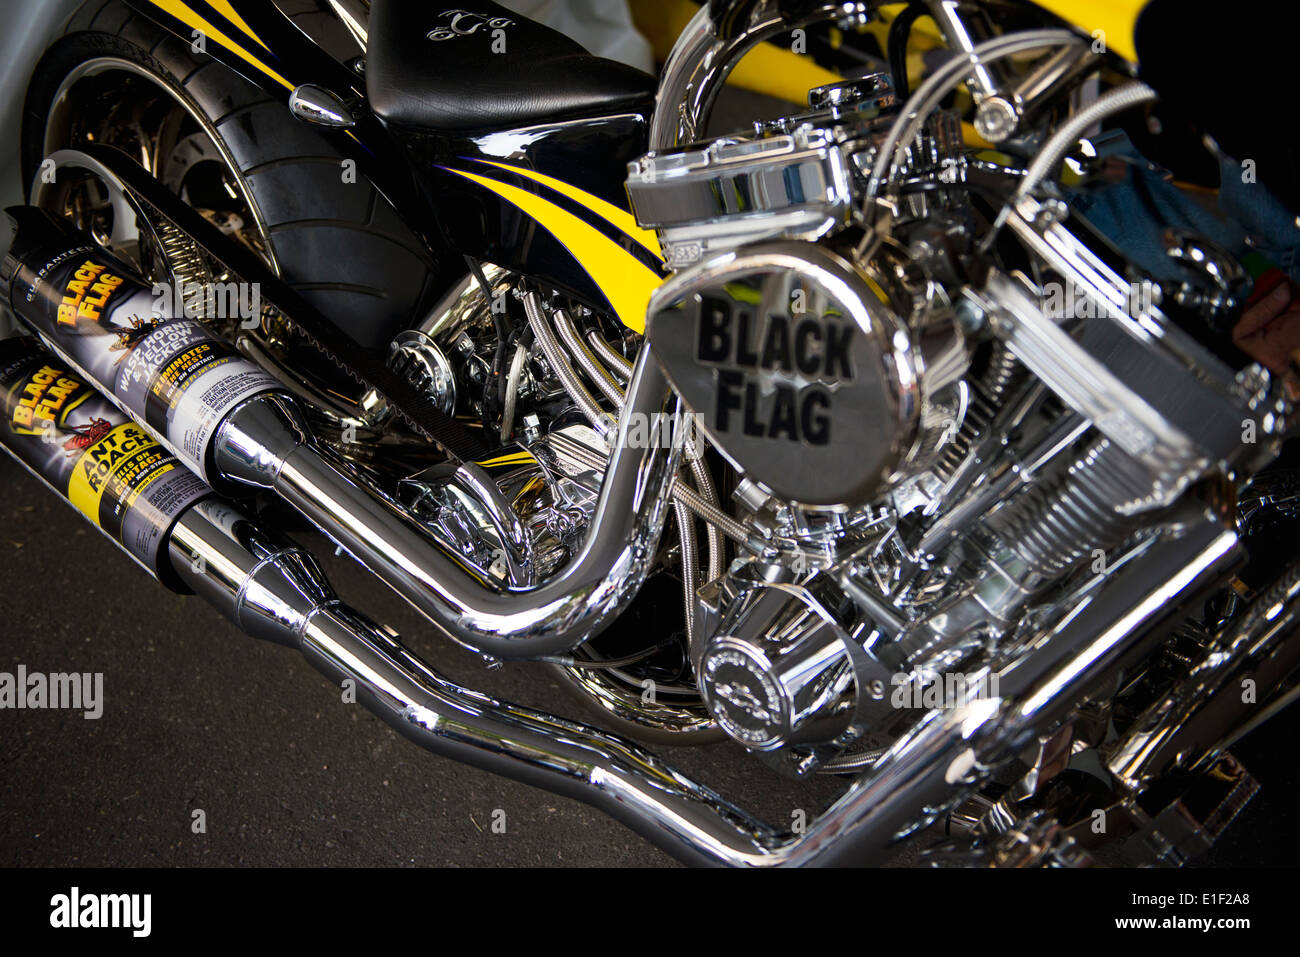 "Black Flag" Custom gebaut Motorrad von "Orange County Choppers" auf dem Display beim 2014 Coca-Cola 600 Nascar-Rennen. Stockfoto